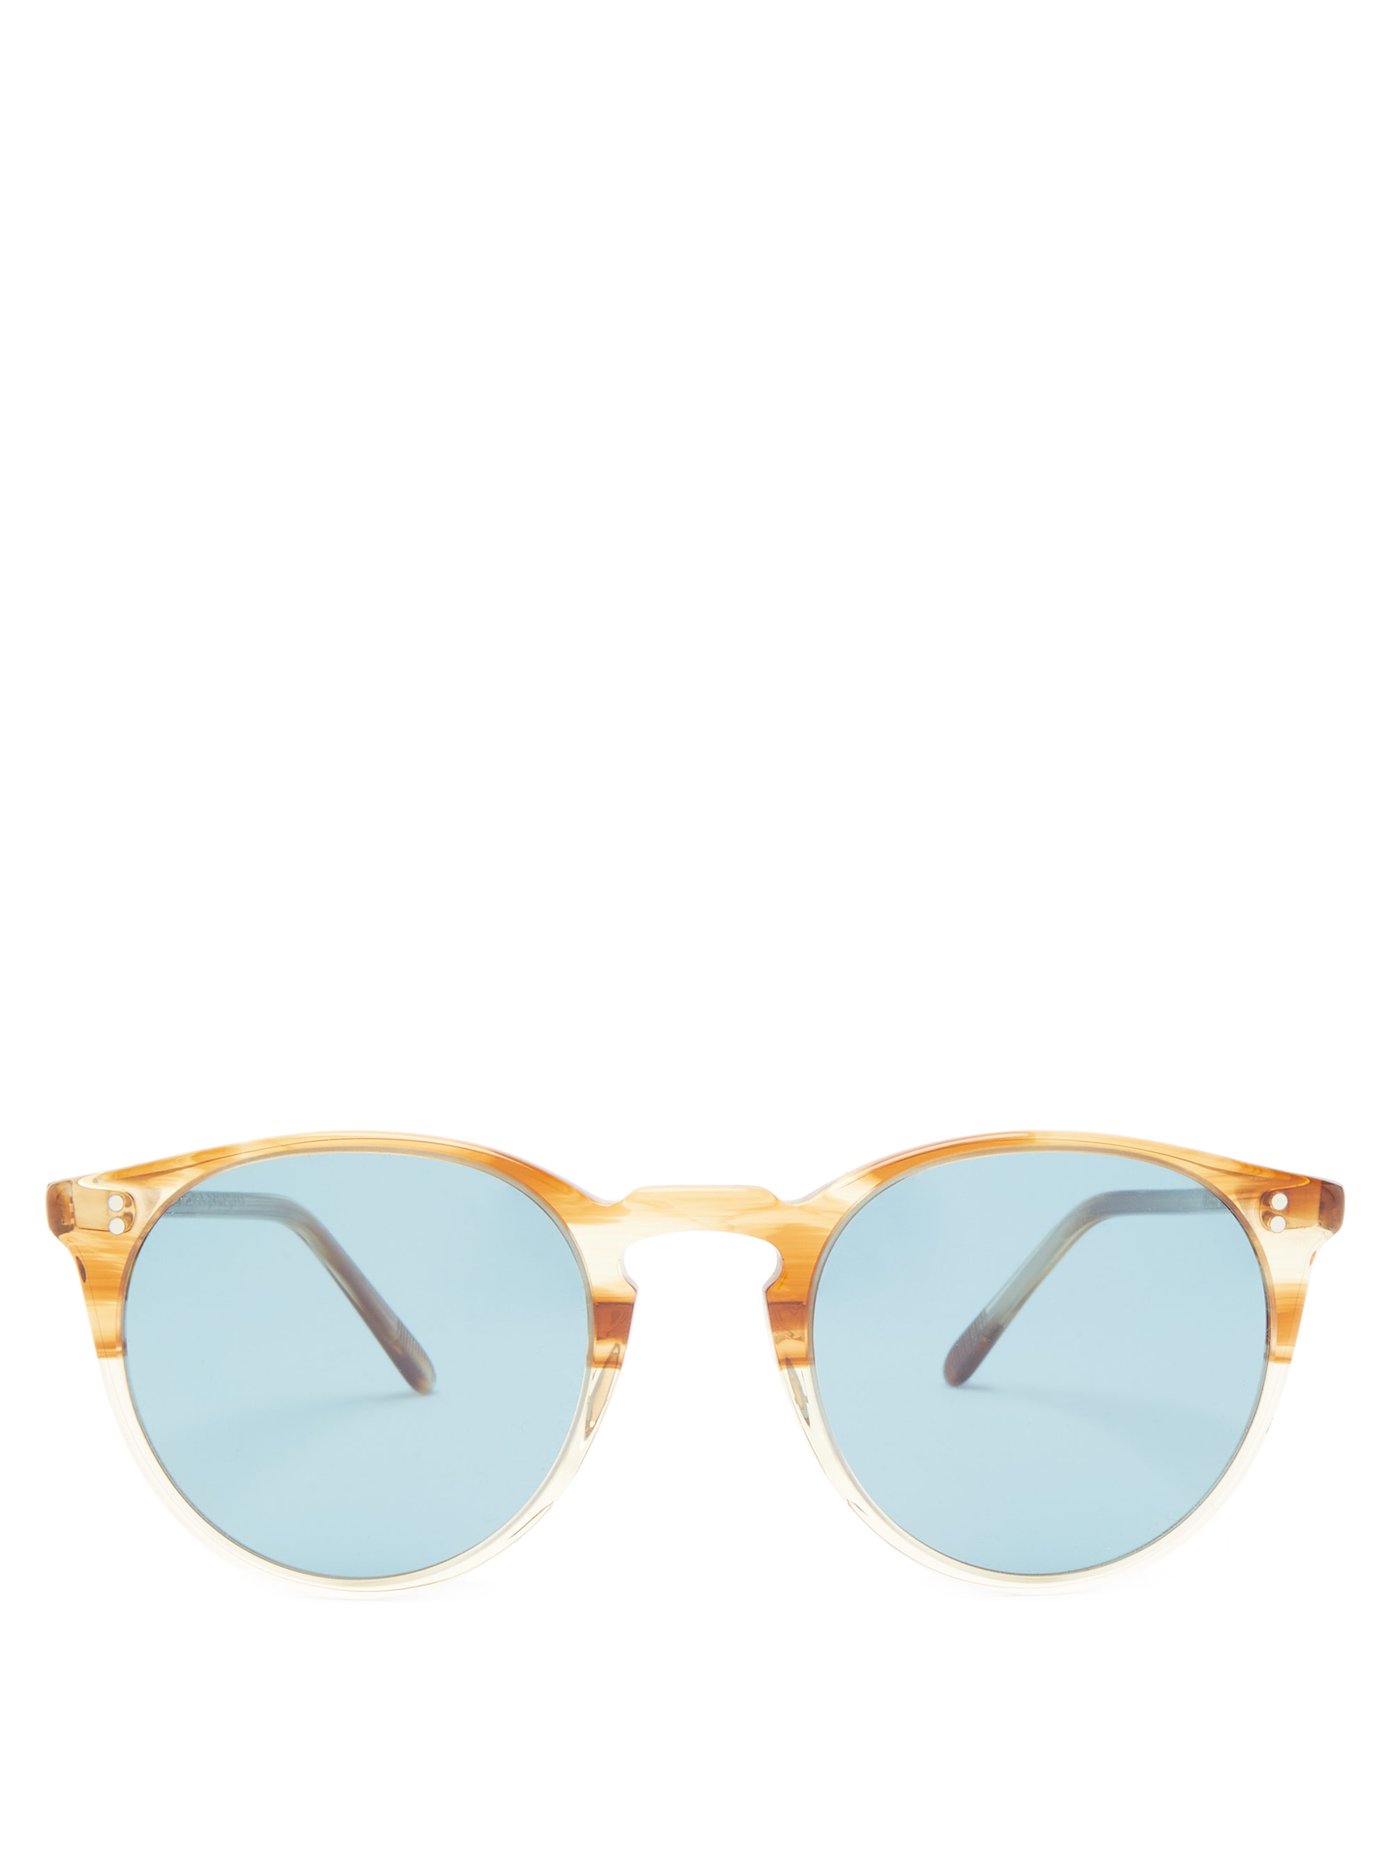 Oliver Peoples Sunglasses Australia Flash Sales, 58% OFF |  